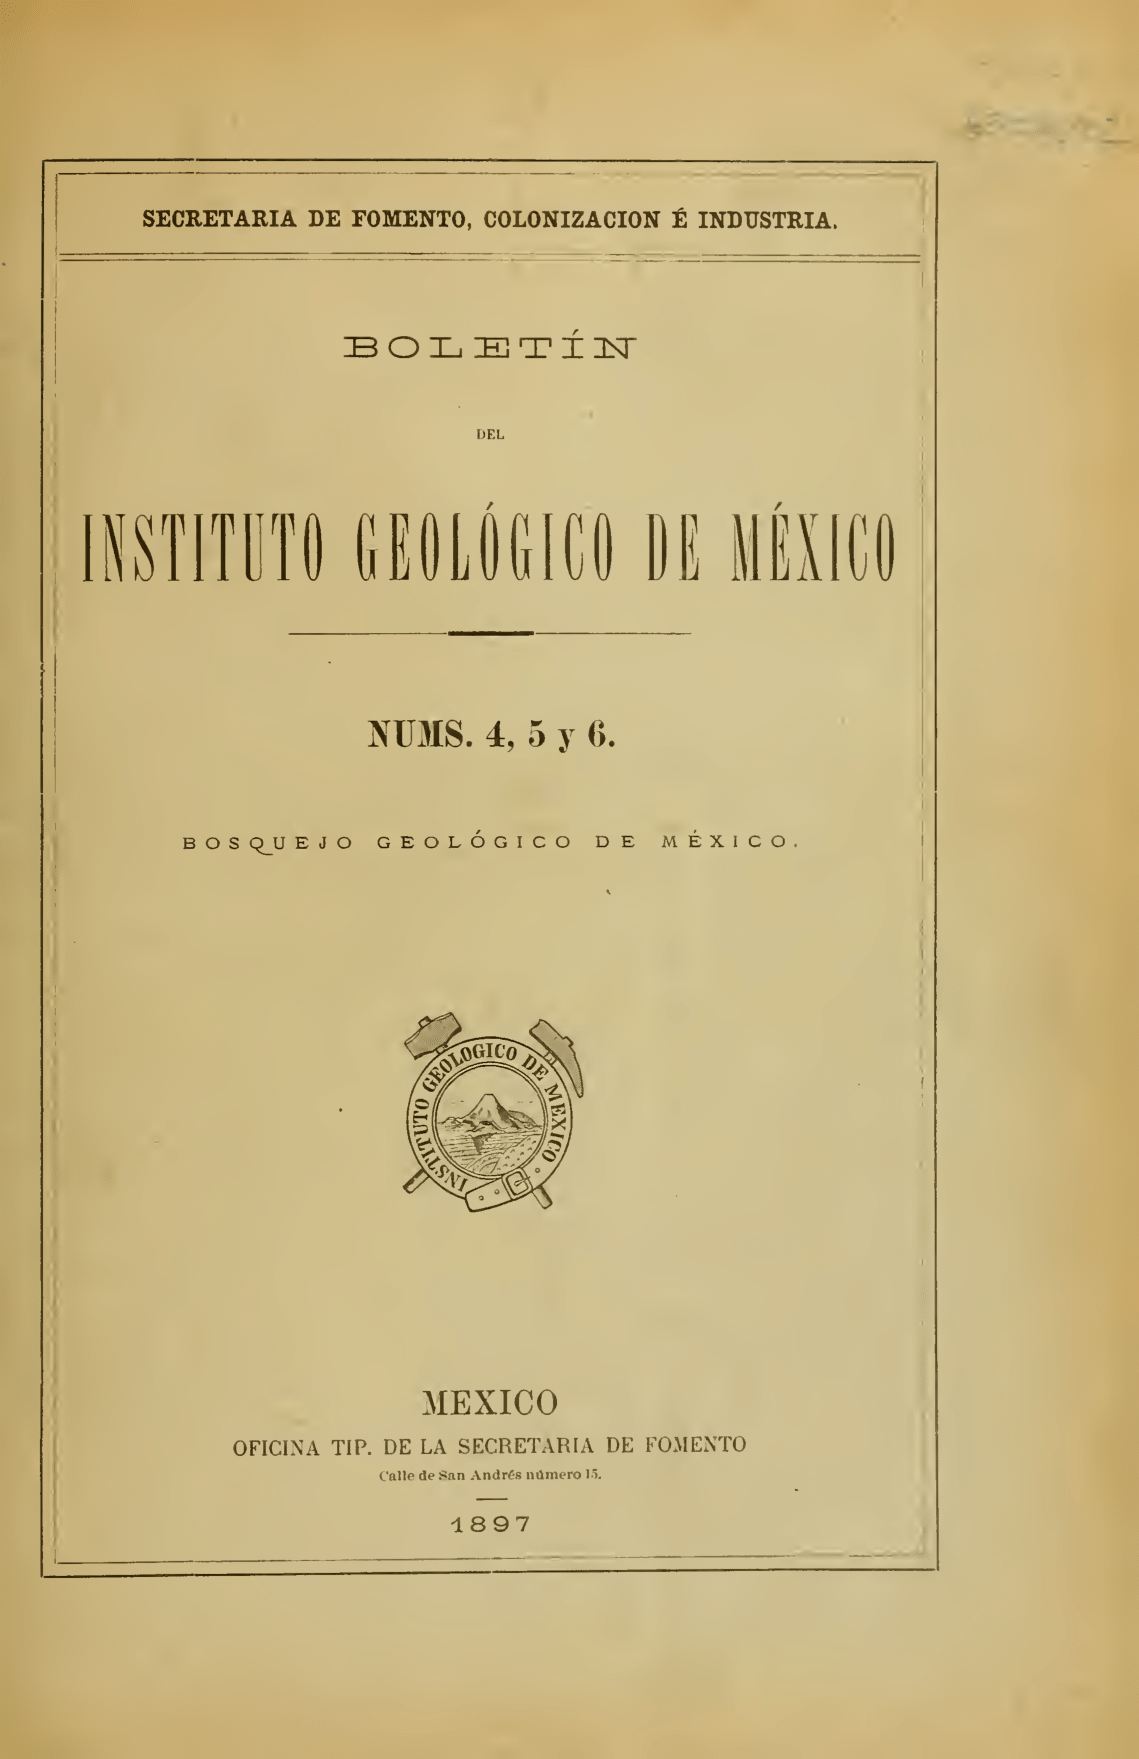 					Ver Vol. 4 (1896): Bosquejo geológico de México: Itinerarios geológicos
				